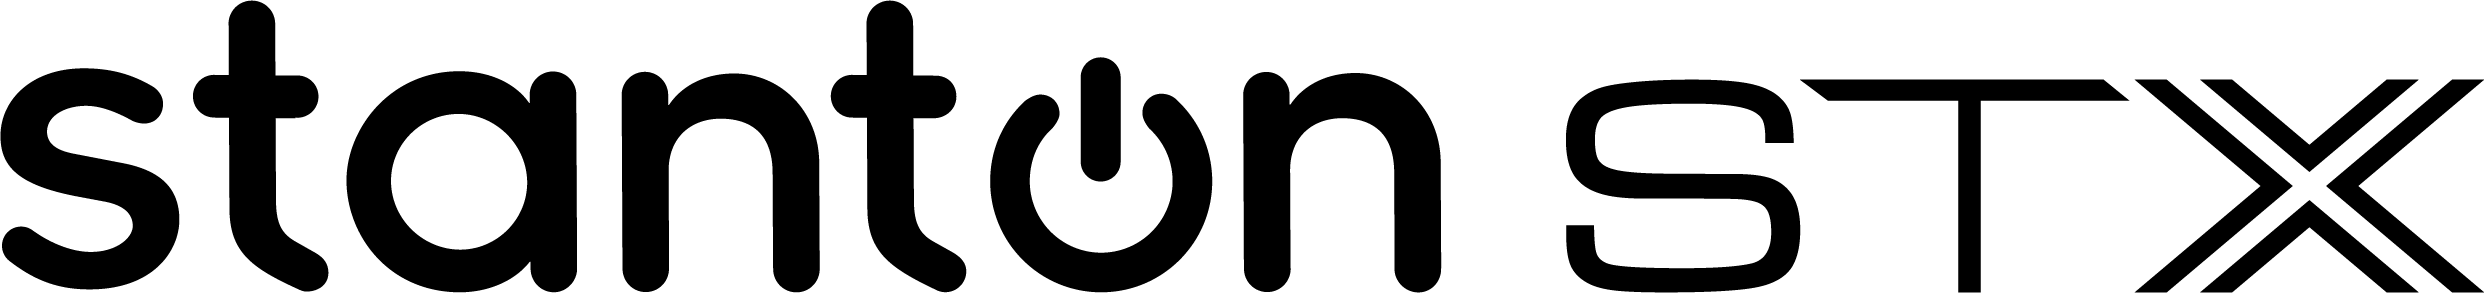 stanton-stx-logo-merged-black.png